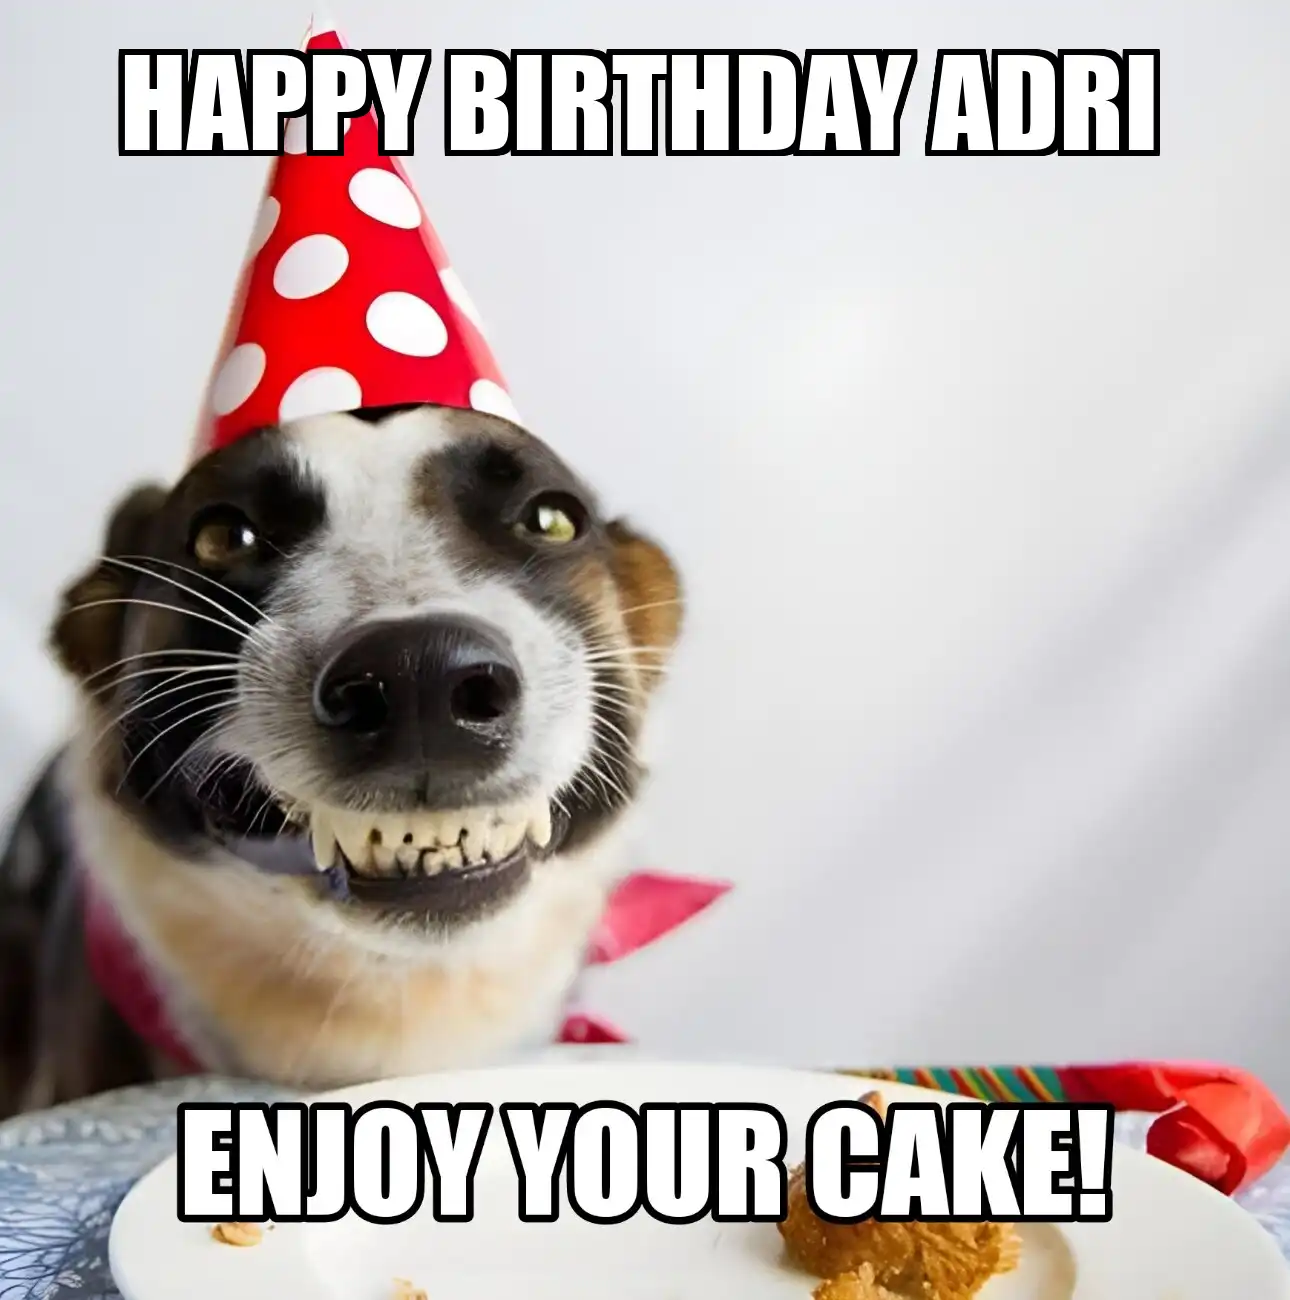 Happy Birthday Adri Enjoy Your Cake Dog Meme